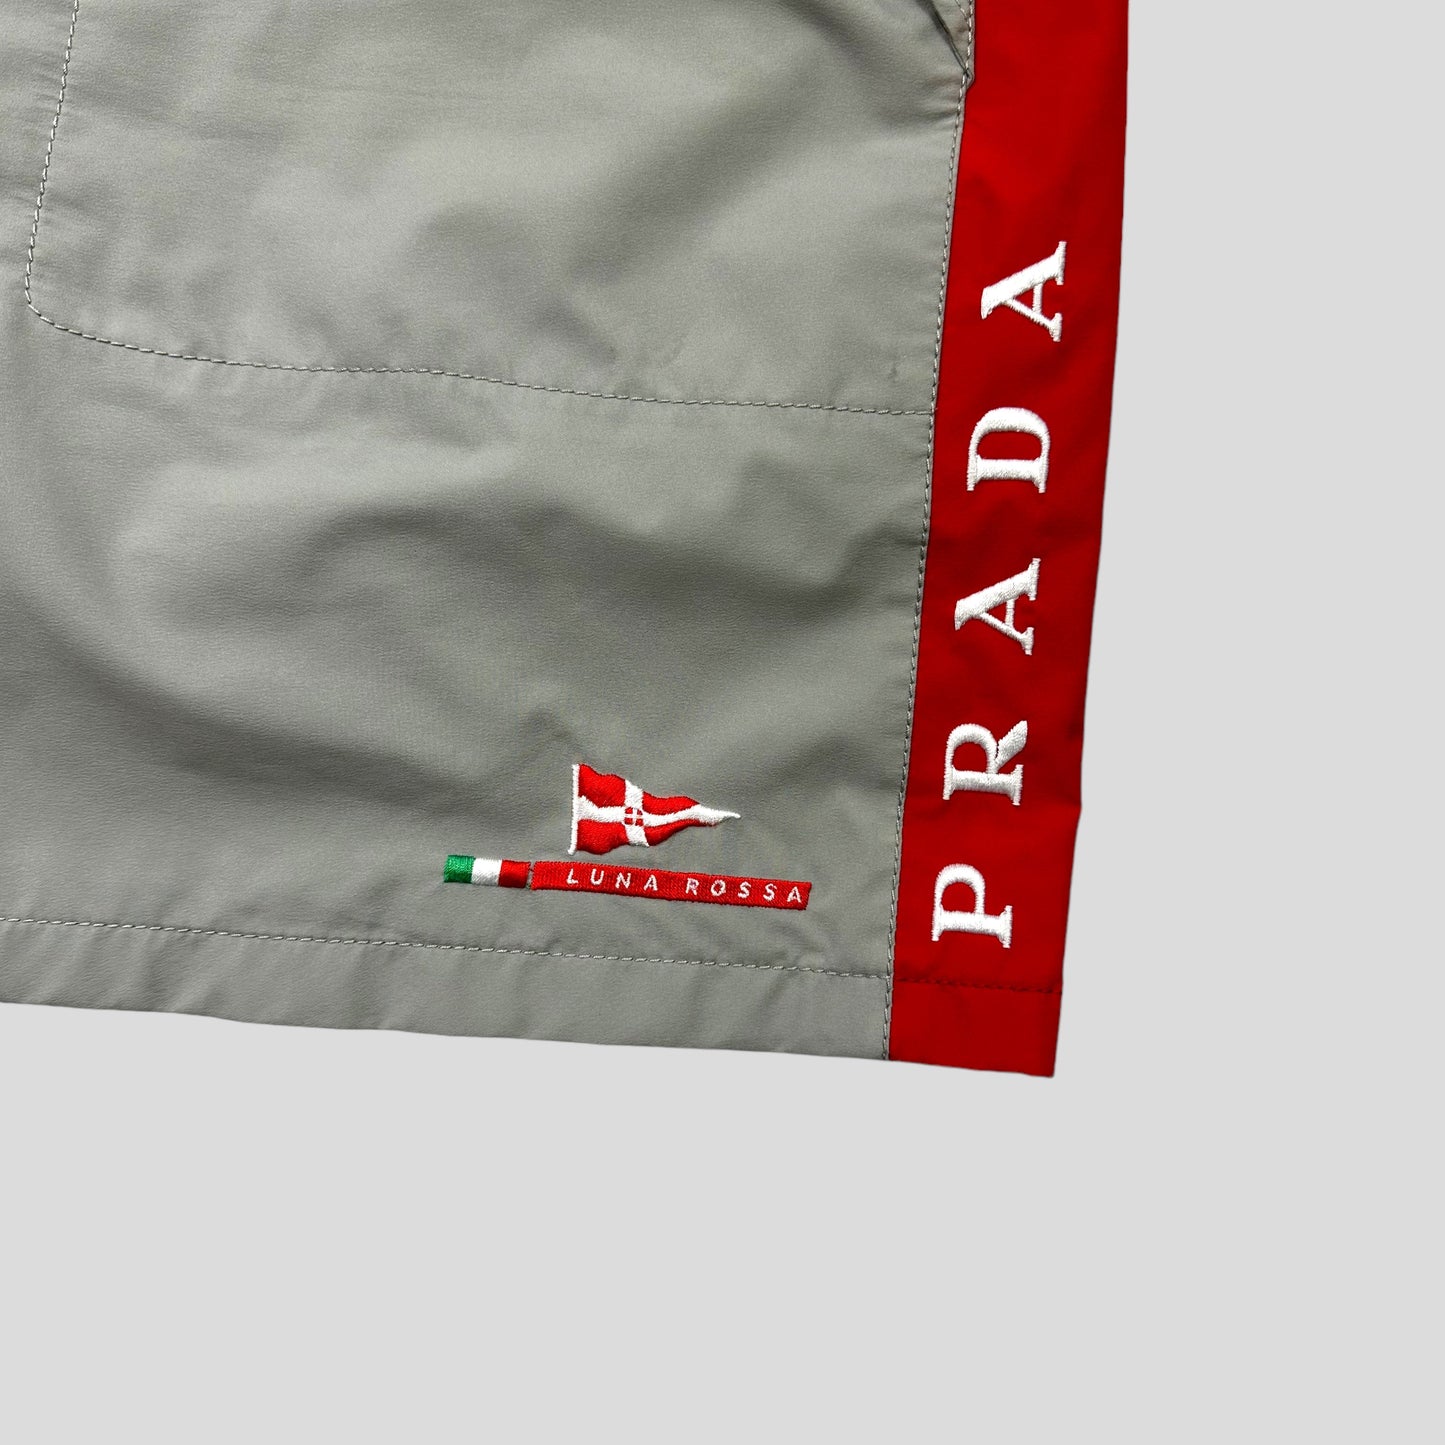 Prada Luna Rossa 2003 Sailing Cargo Shorts - IT54